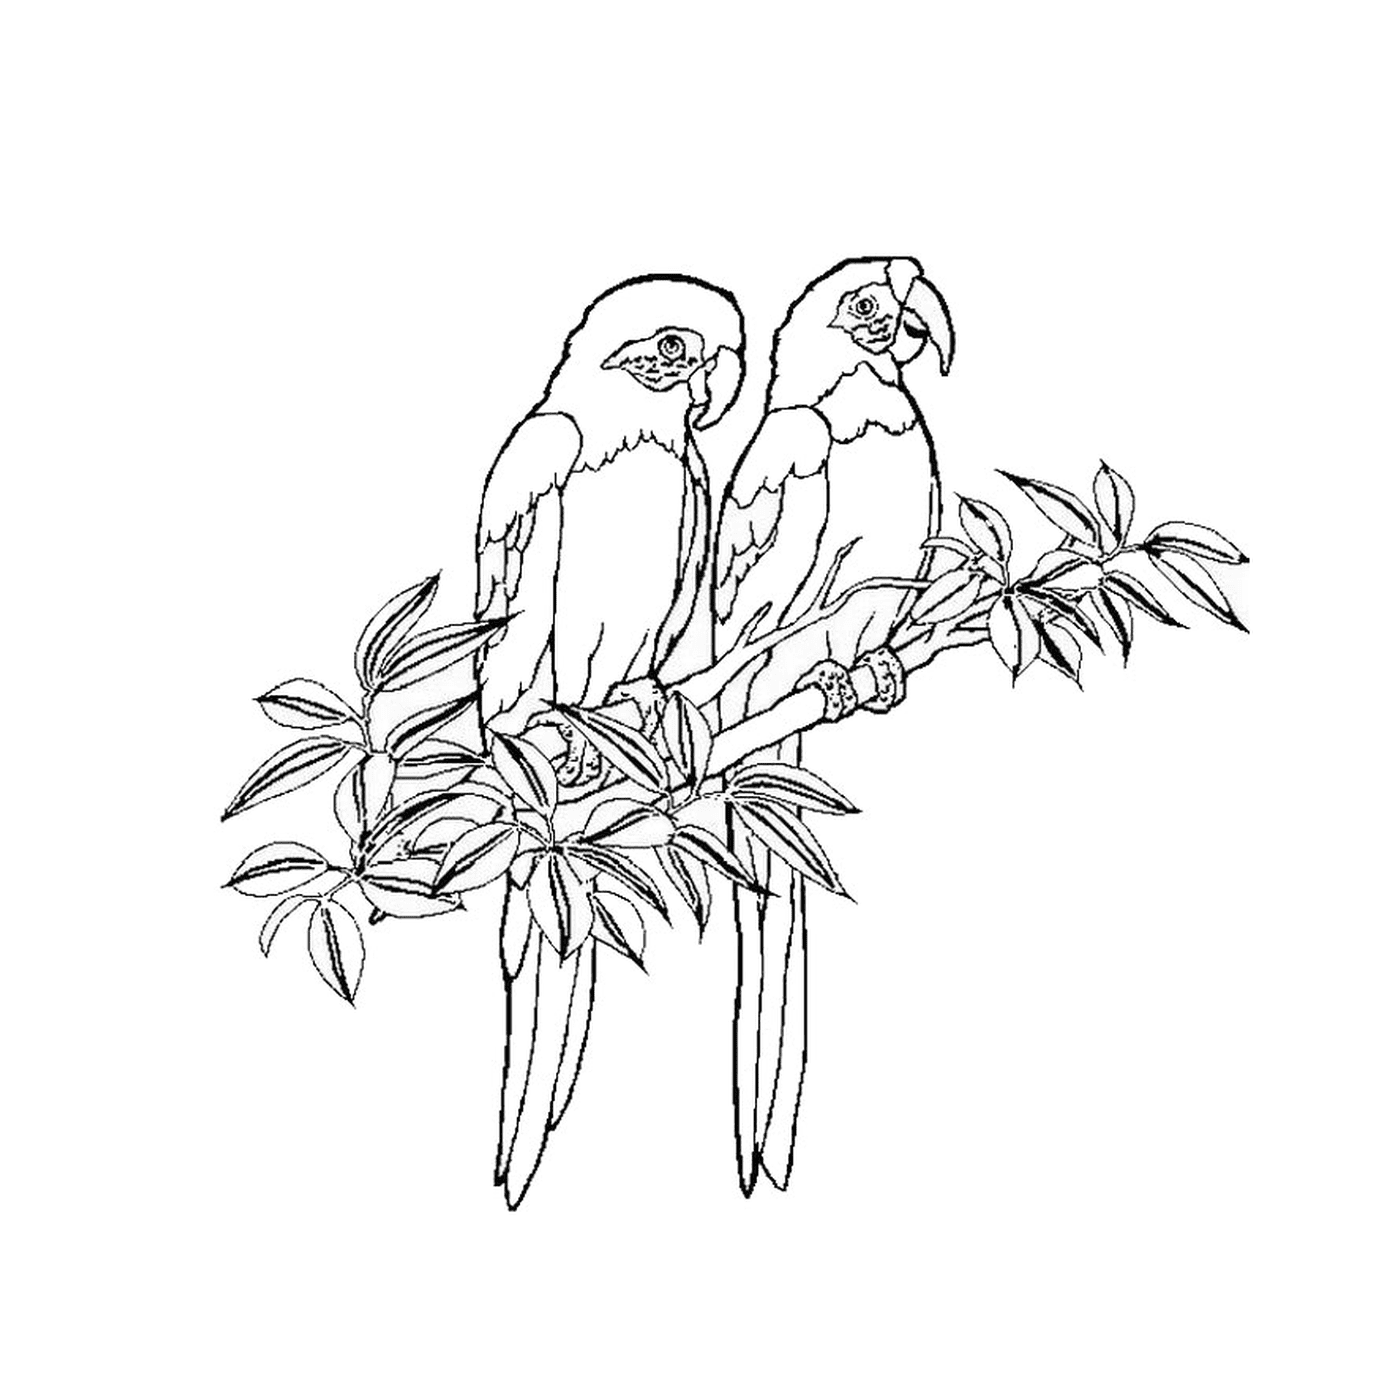  Duas perucas sentadas em um galho de árvore 